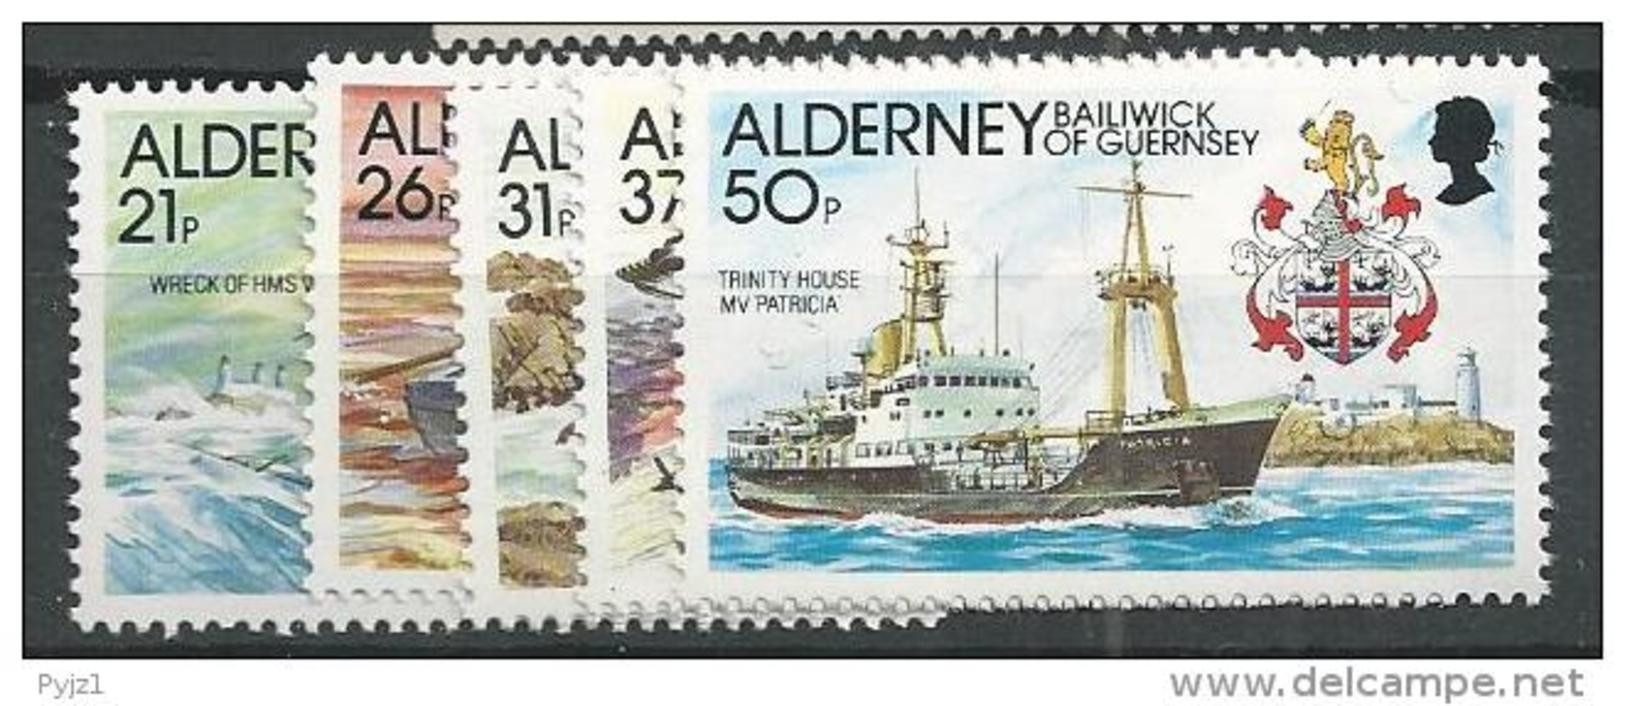 1991 MNH Alderney Postfris - Alderney